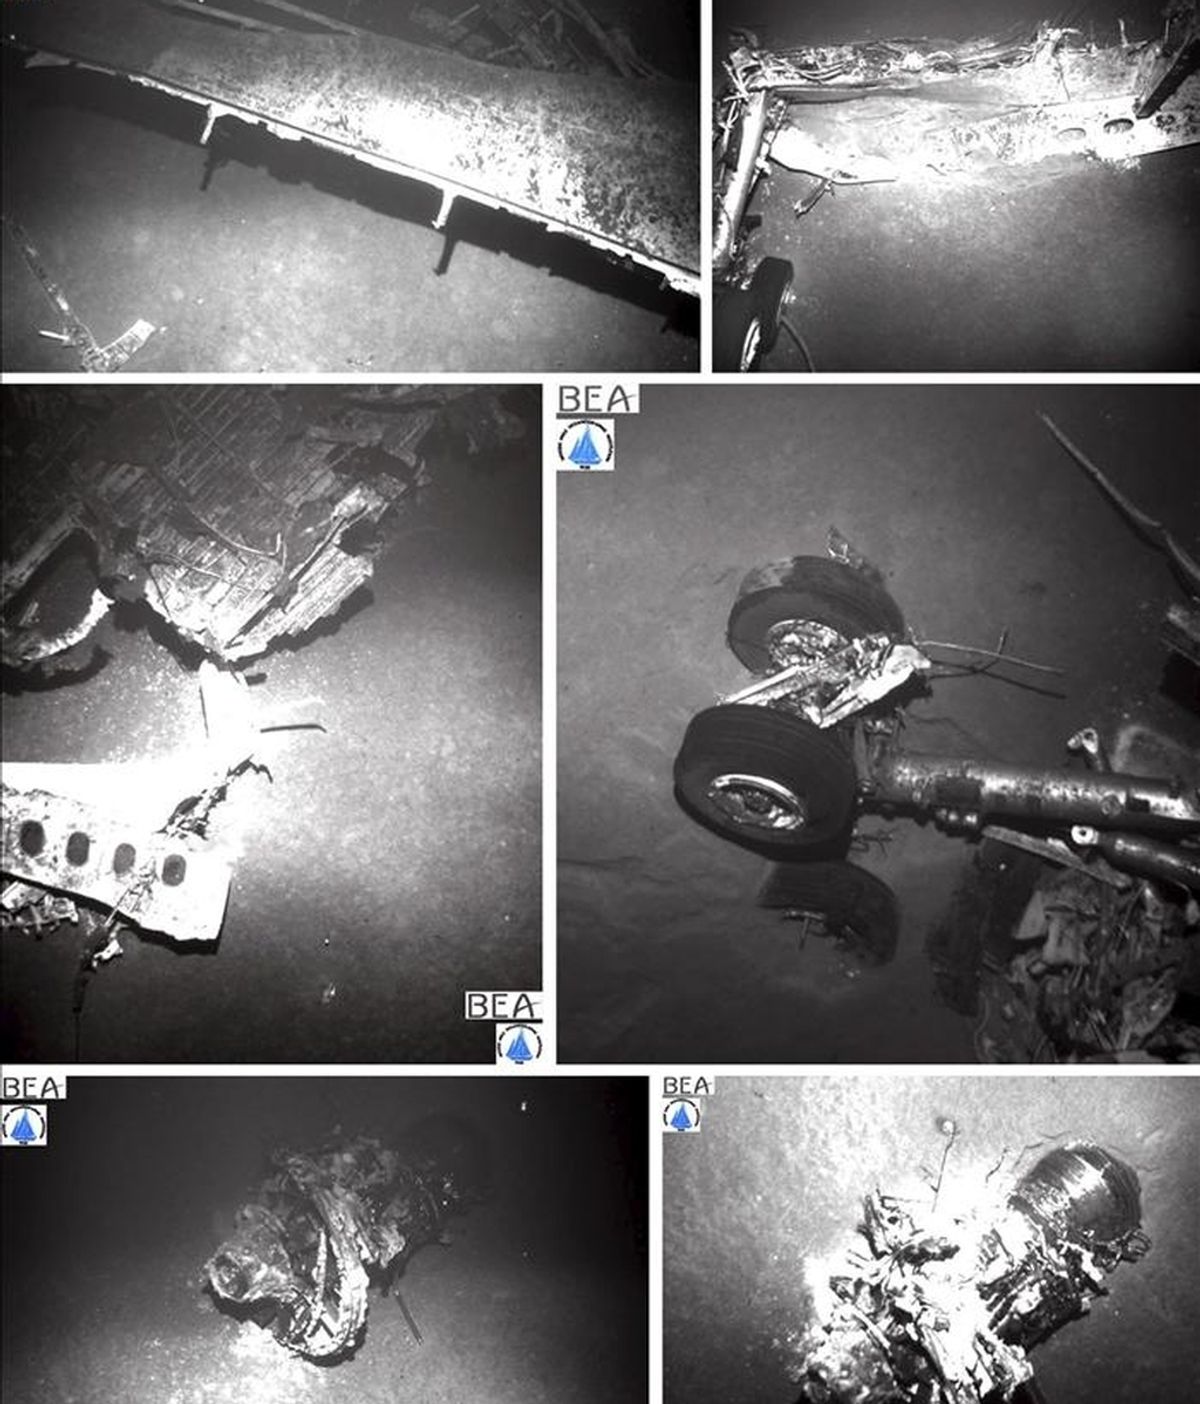 Combo de seis imágenes facilitadas por la Oficina de Investigación y Análisis (BEA) que muestra partes del fuselaje del avión de Air France siniestrado en junio de 2009. EFE/Archivo